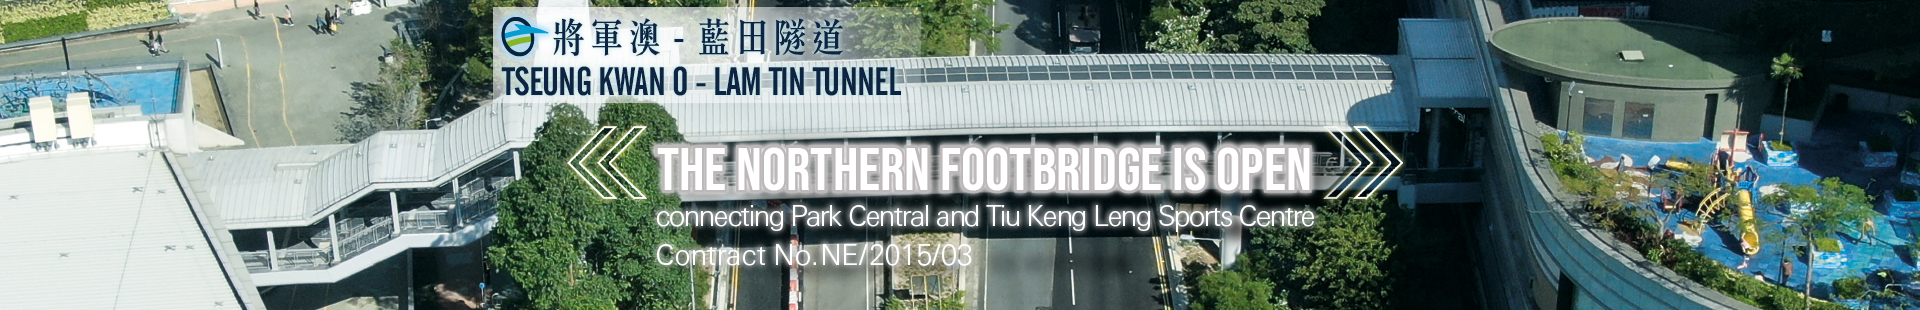 The Northern Footbridge is open